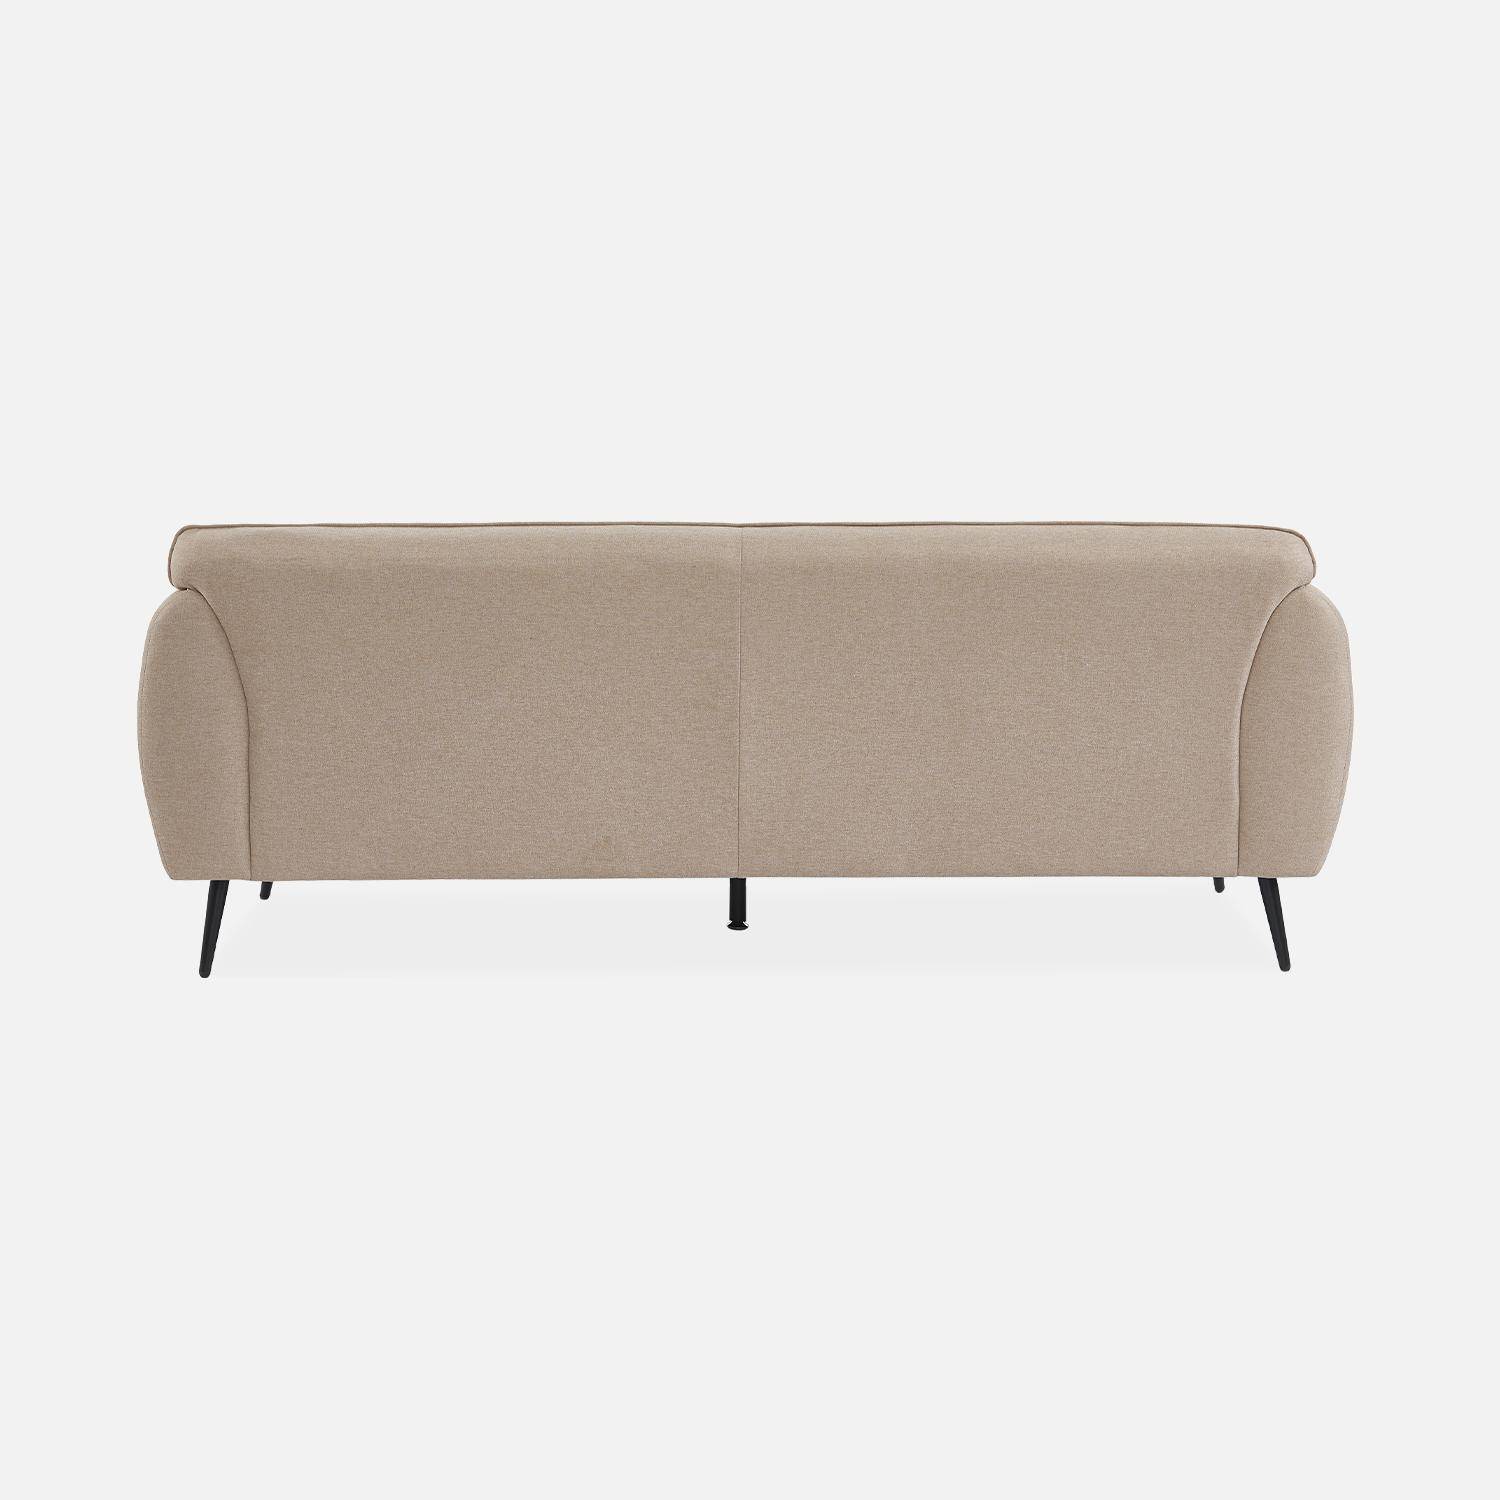 3-Sitzer-Sofa mit Stoffbezug in beige und schwarzen Metallfüßen - Soft,sweeek,Photo5